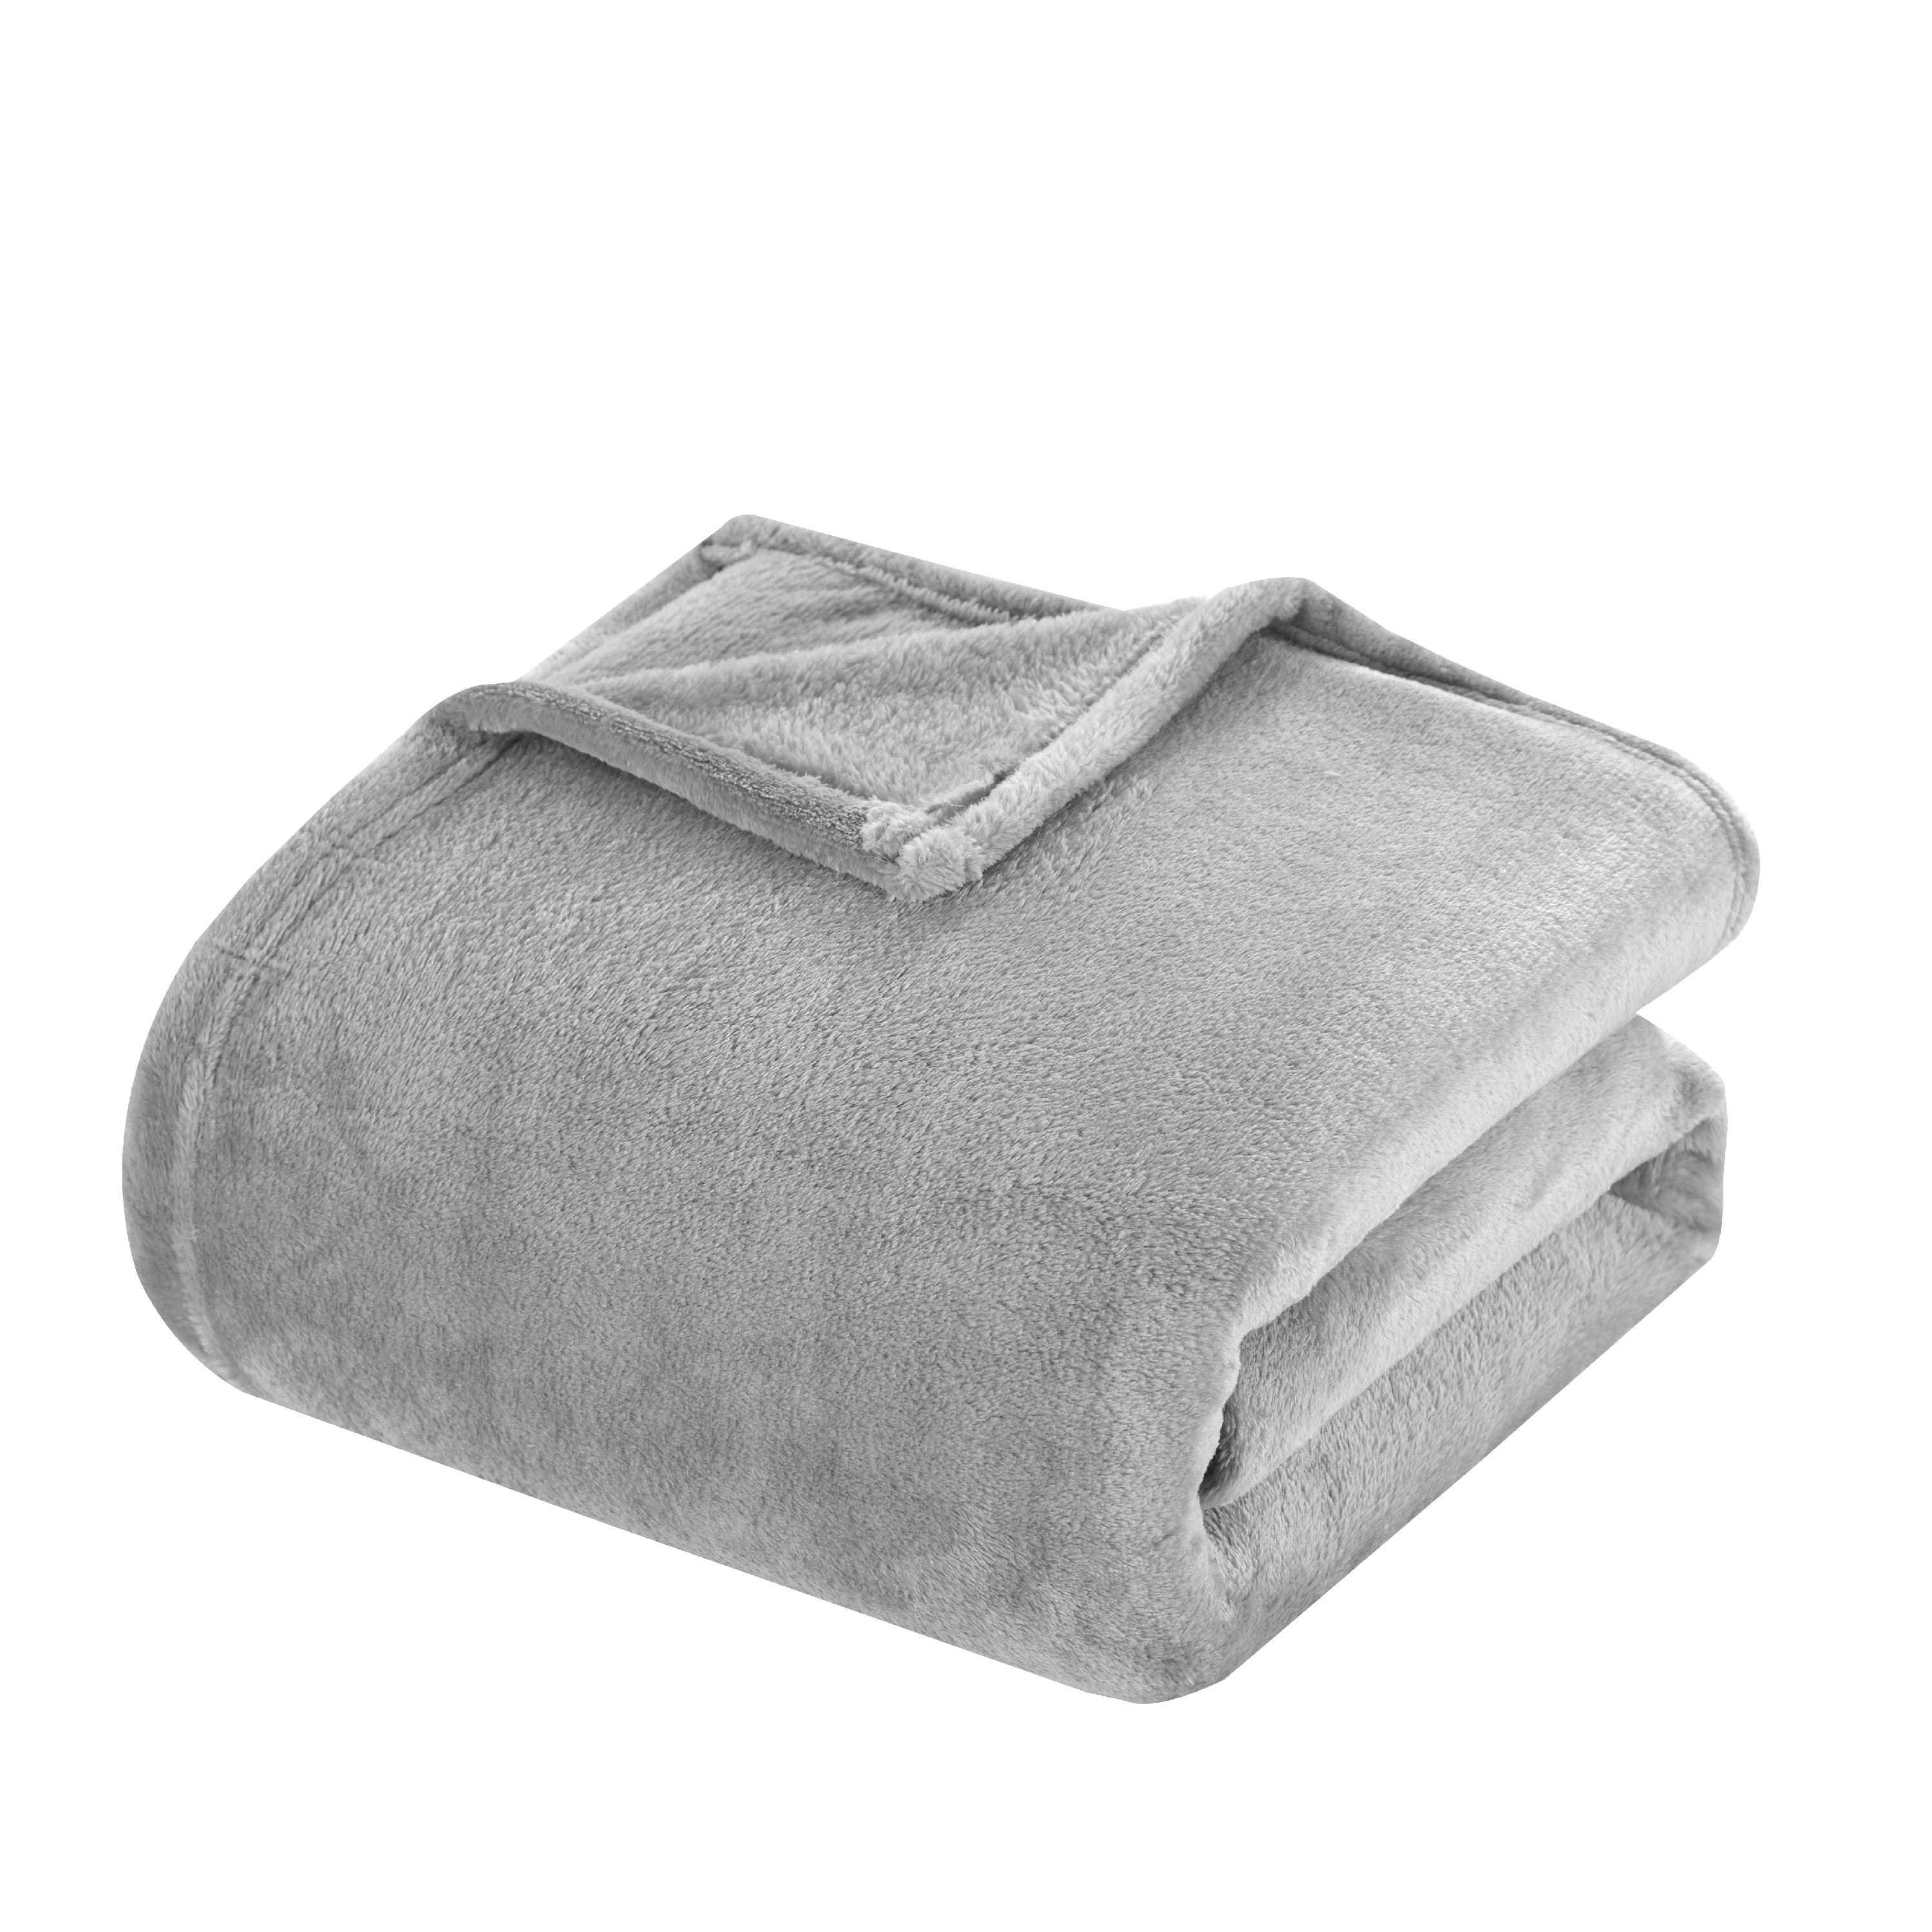 Reversible Dream Blanket 3.0 CAL Crochet Kit 1 Shark Grey (Accent Colour)